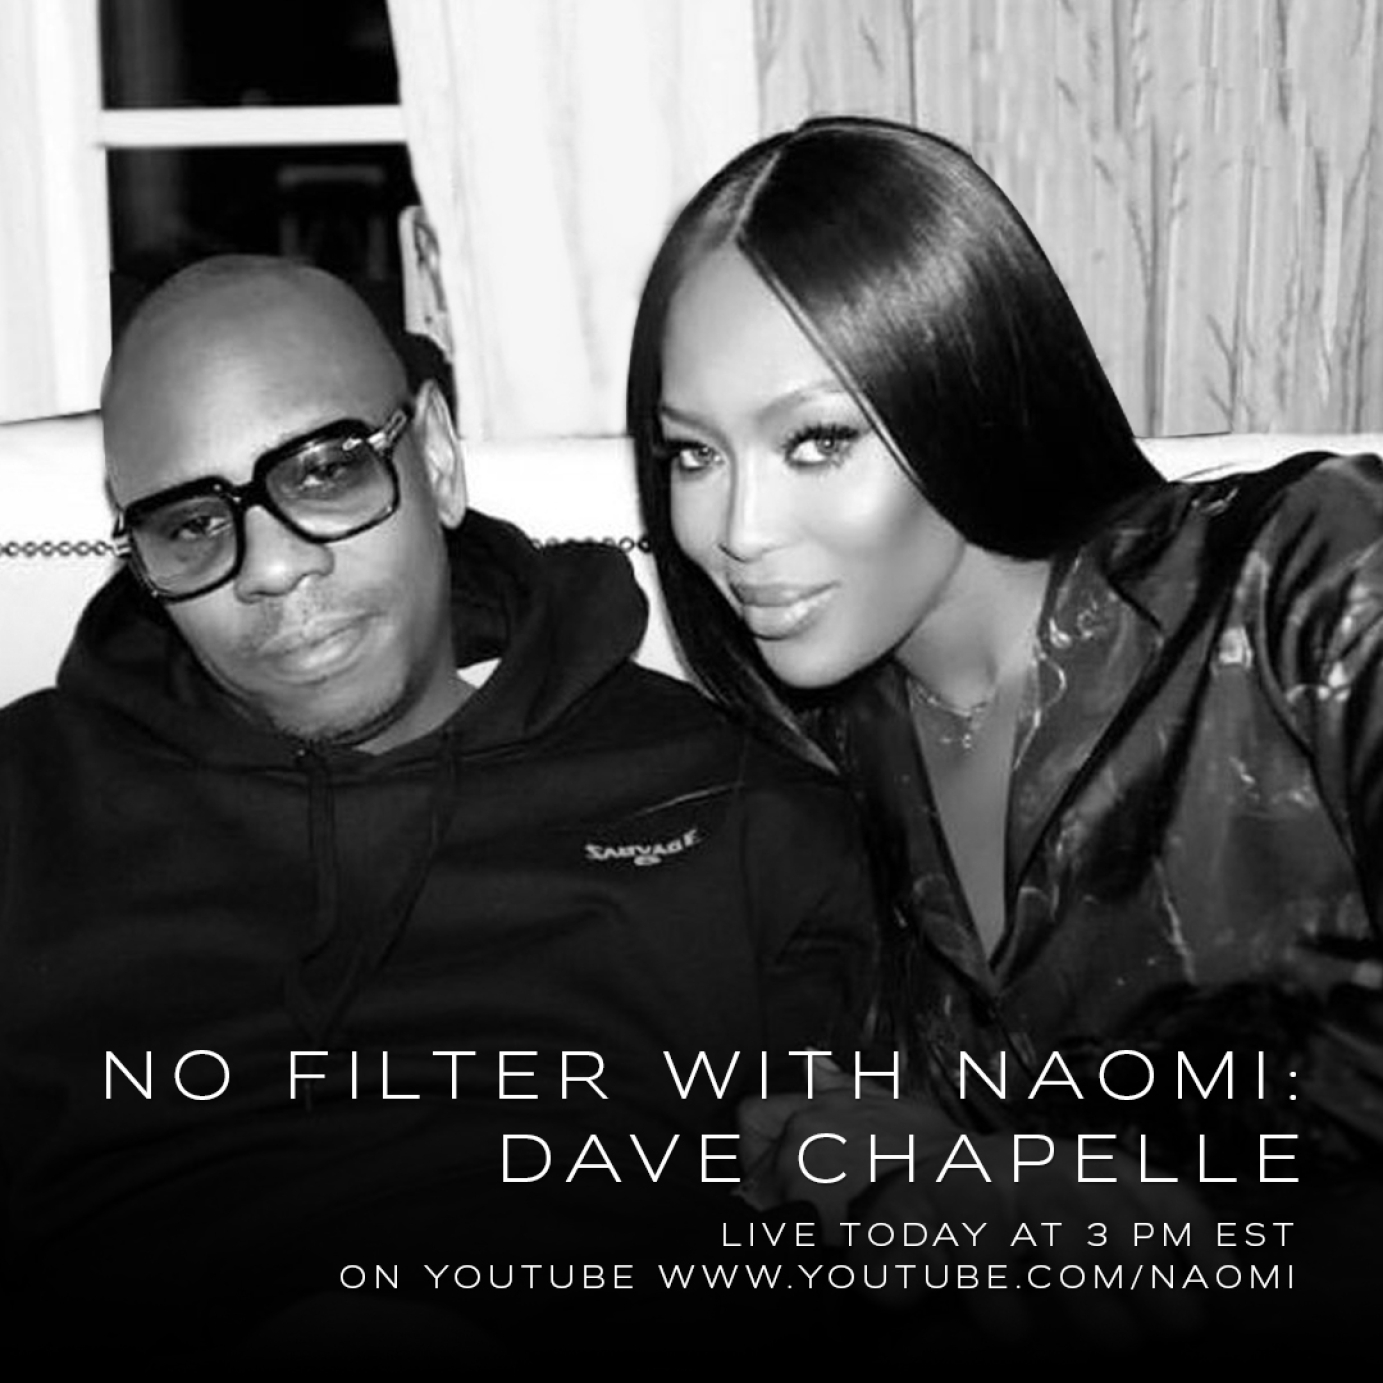 No filter with Naomi